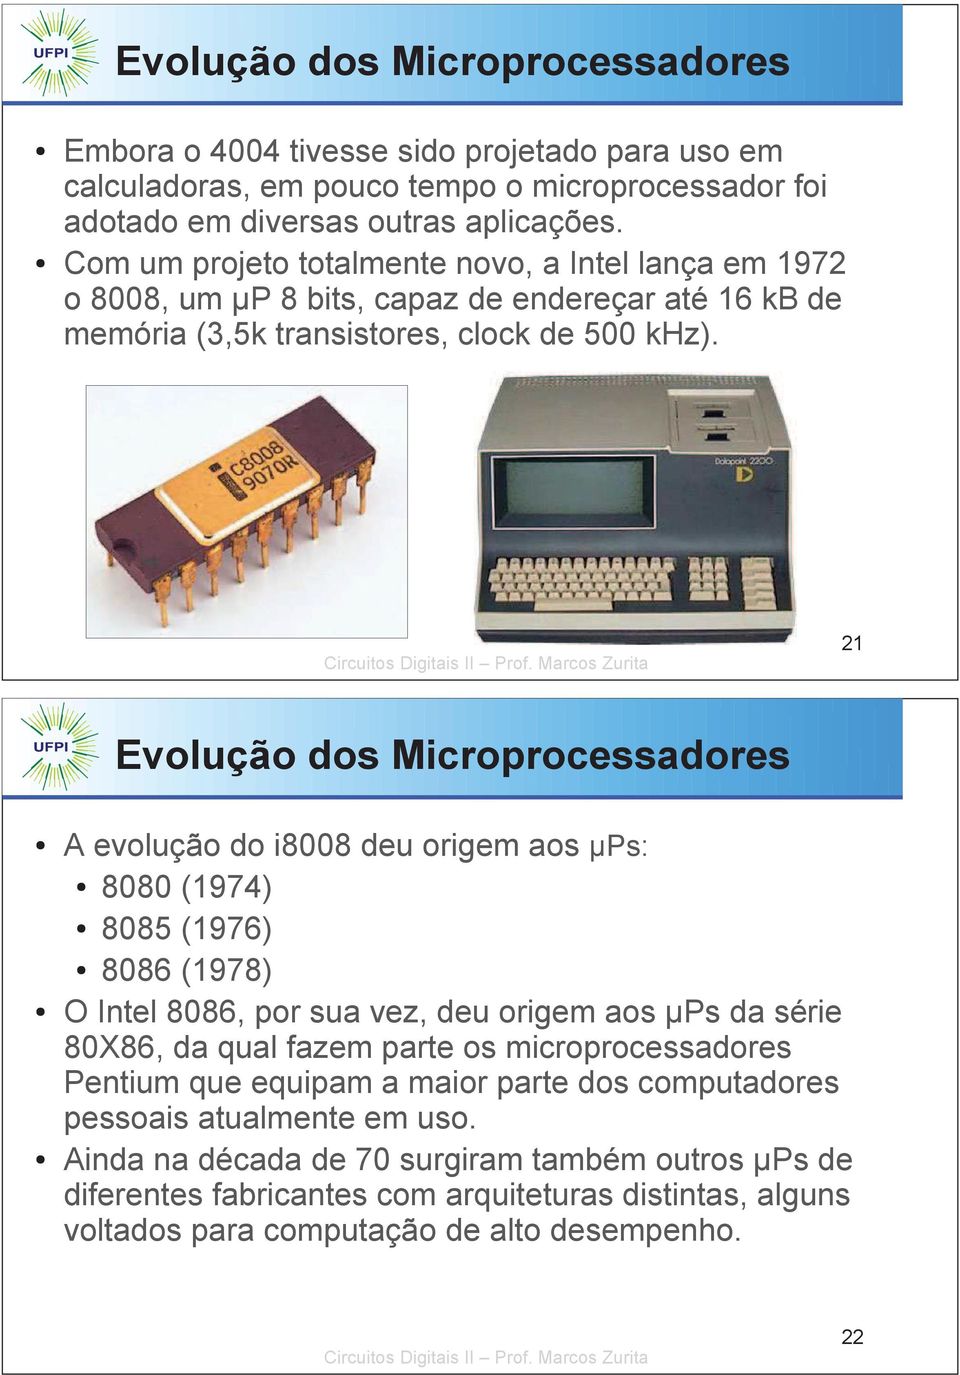 21 Evolução dos Microprocessadores A evolução do i8008 deu origem aos µps: 8080 (1974) 8085 (1976) 8086 (1978) O Intel 8086, por sua vez, deu origem aos µps da série 80X86, da qual fazem parte